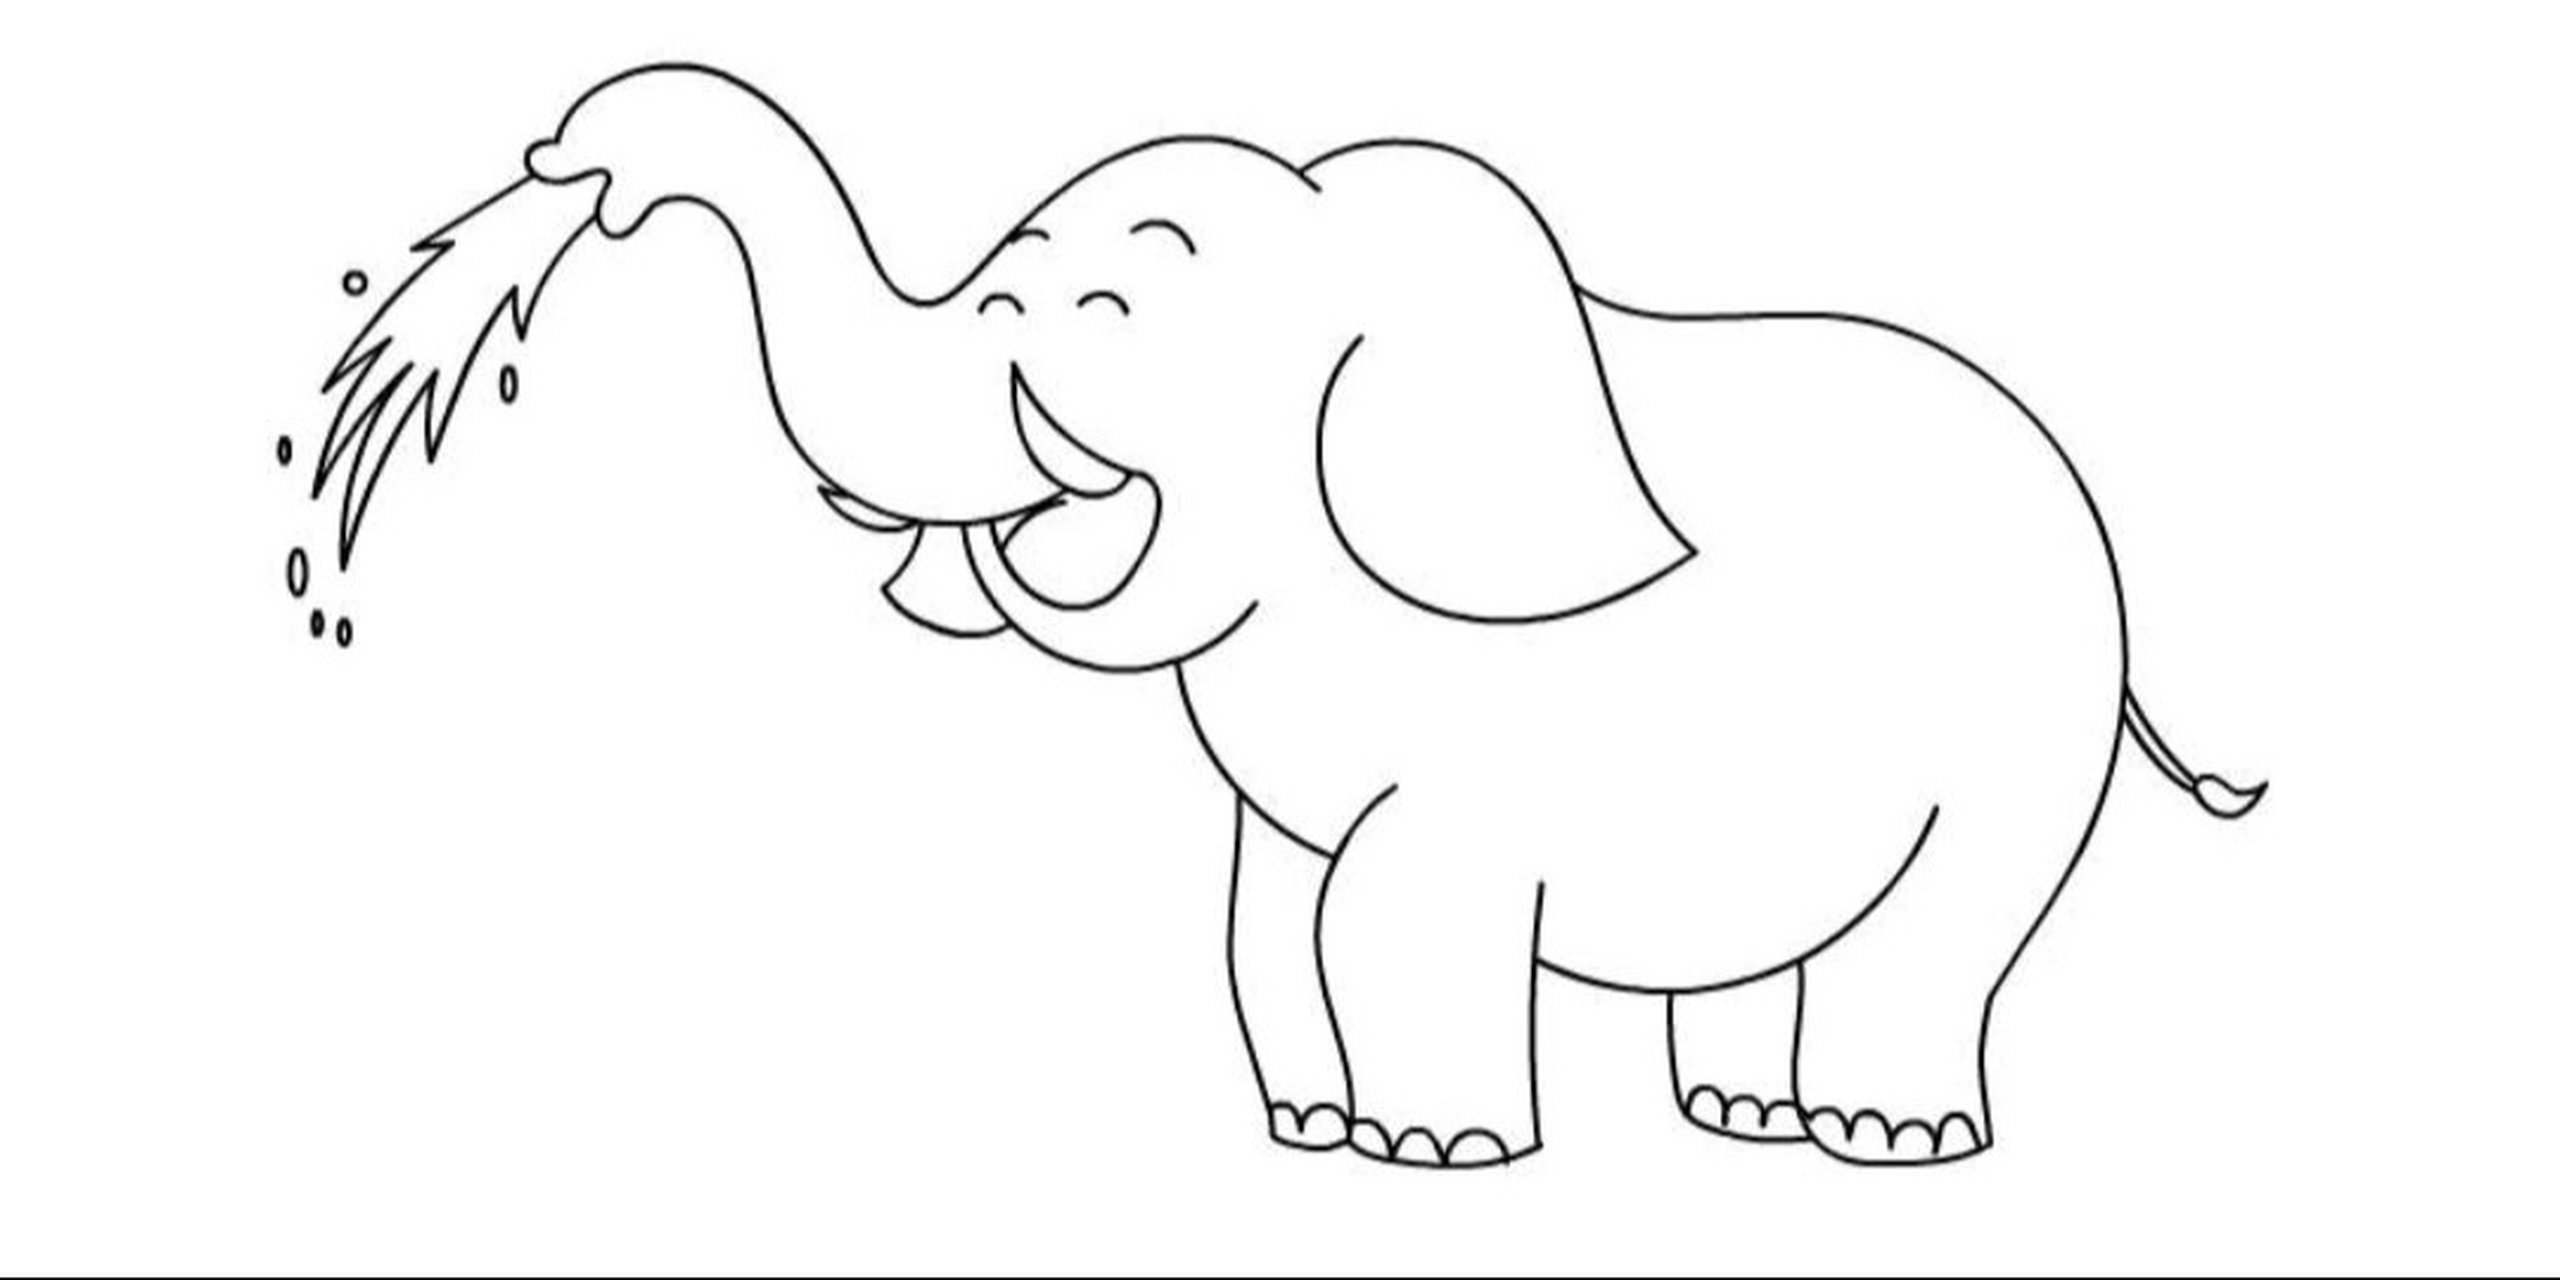 会喷水的大象简笔画 长长鼻子像水管93 吸水喷水超简单97 大象